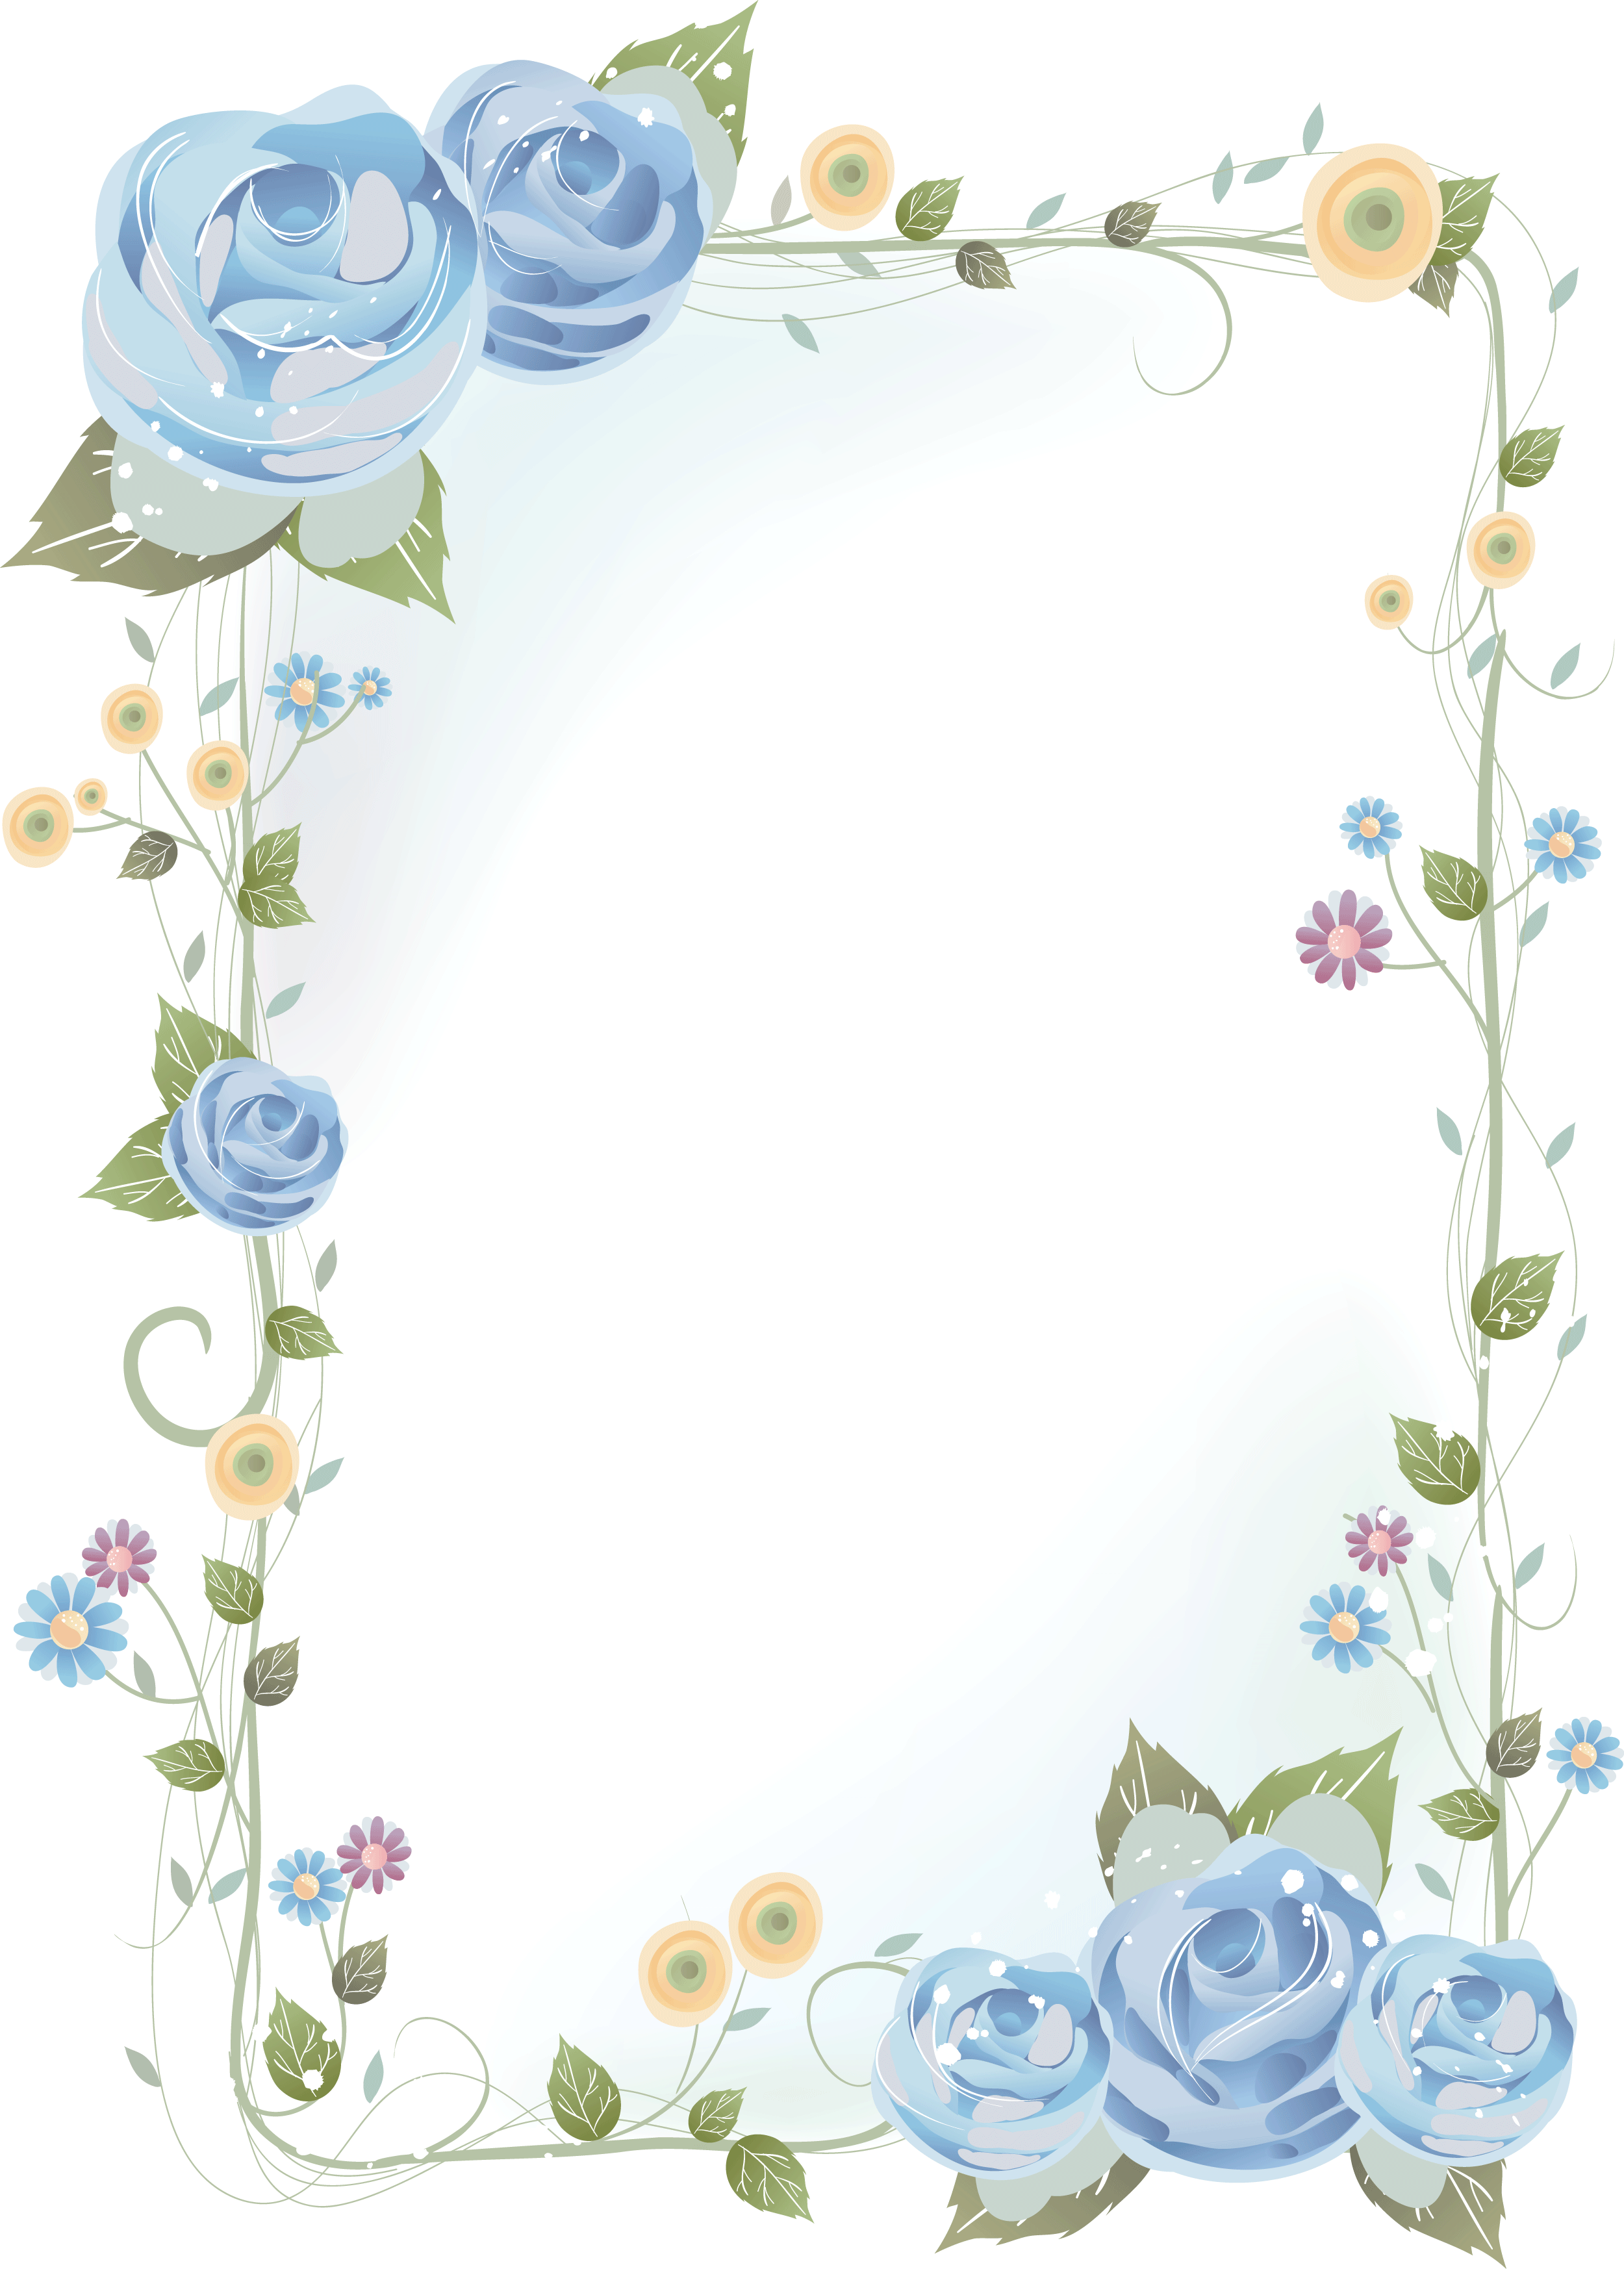 バラの画像 イラスト 壁紙 背景用 No 639 青いバラ 茎葉